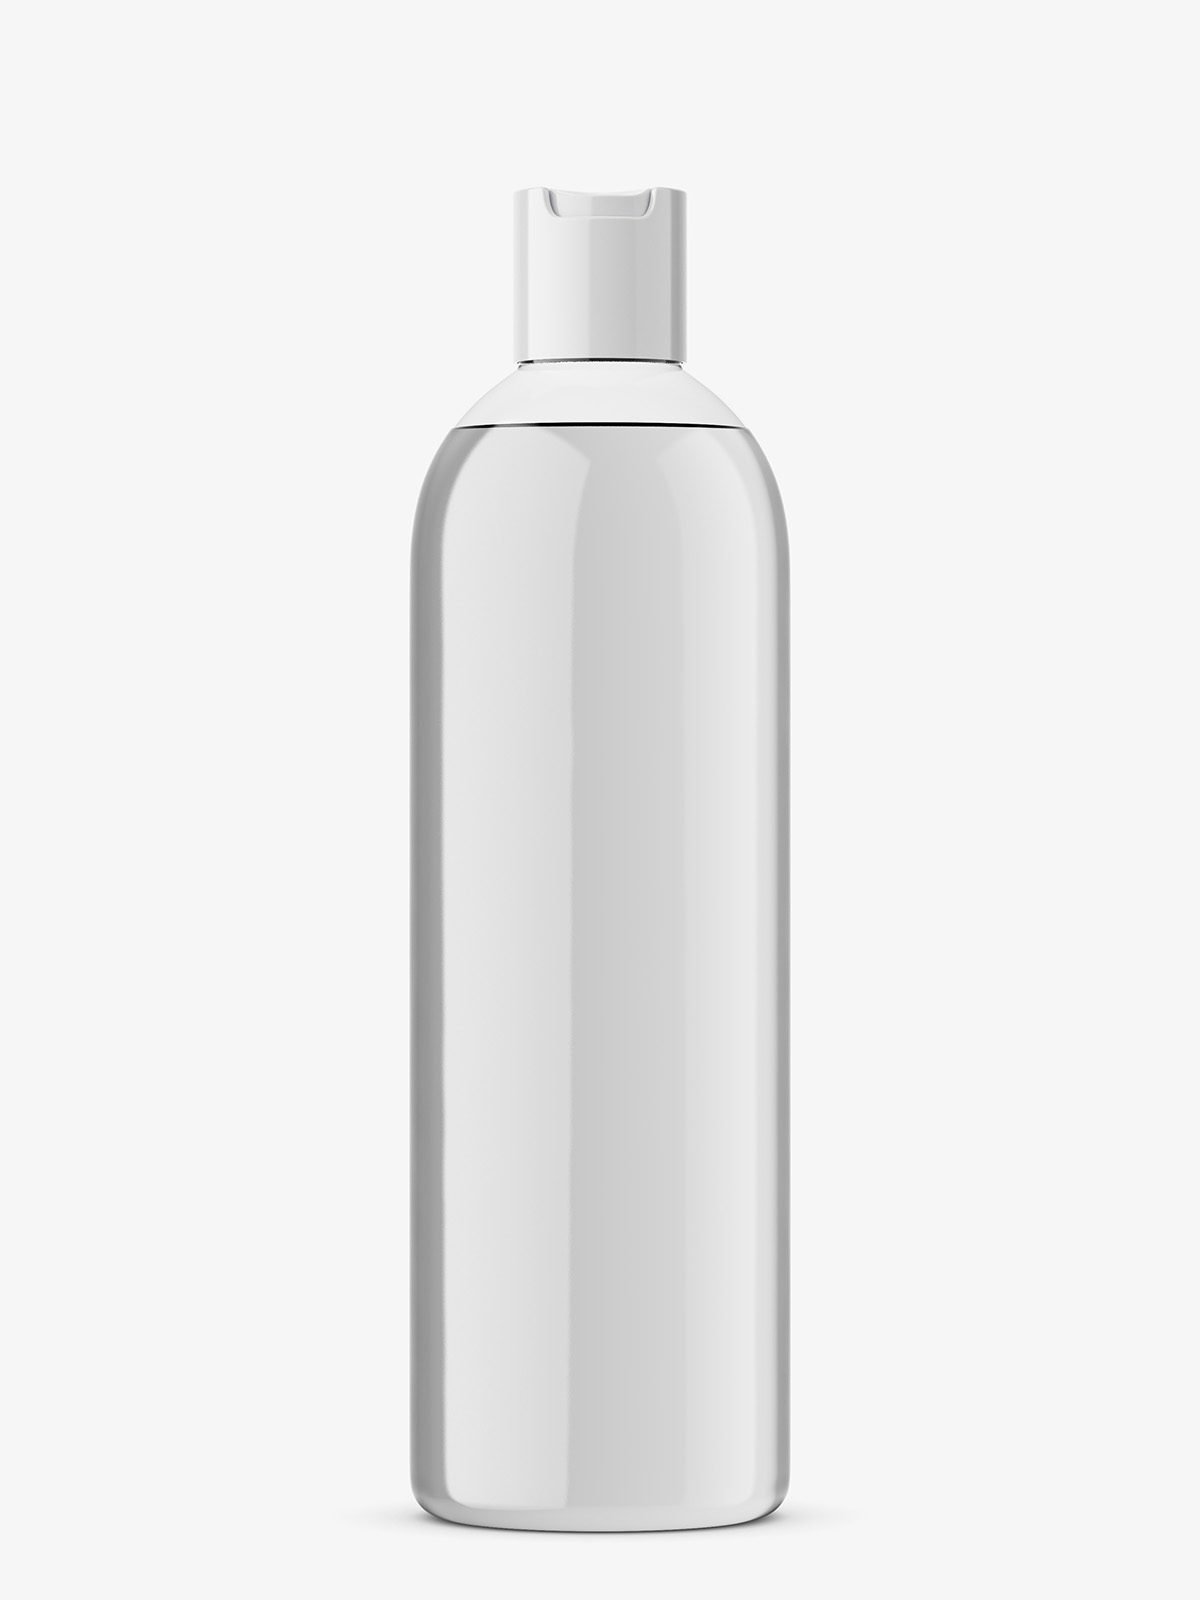 Bottle With Disc Top Mockup Transparent Smarty Mockups